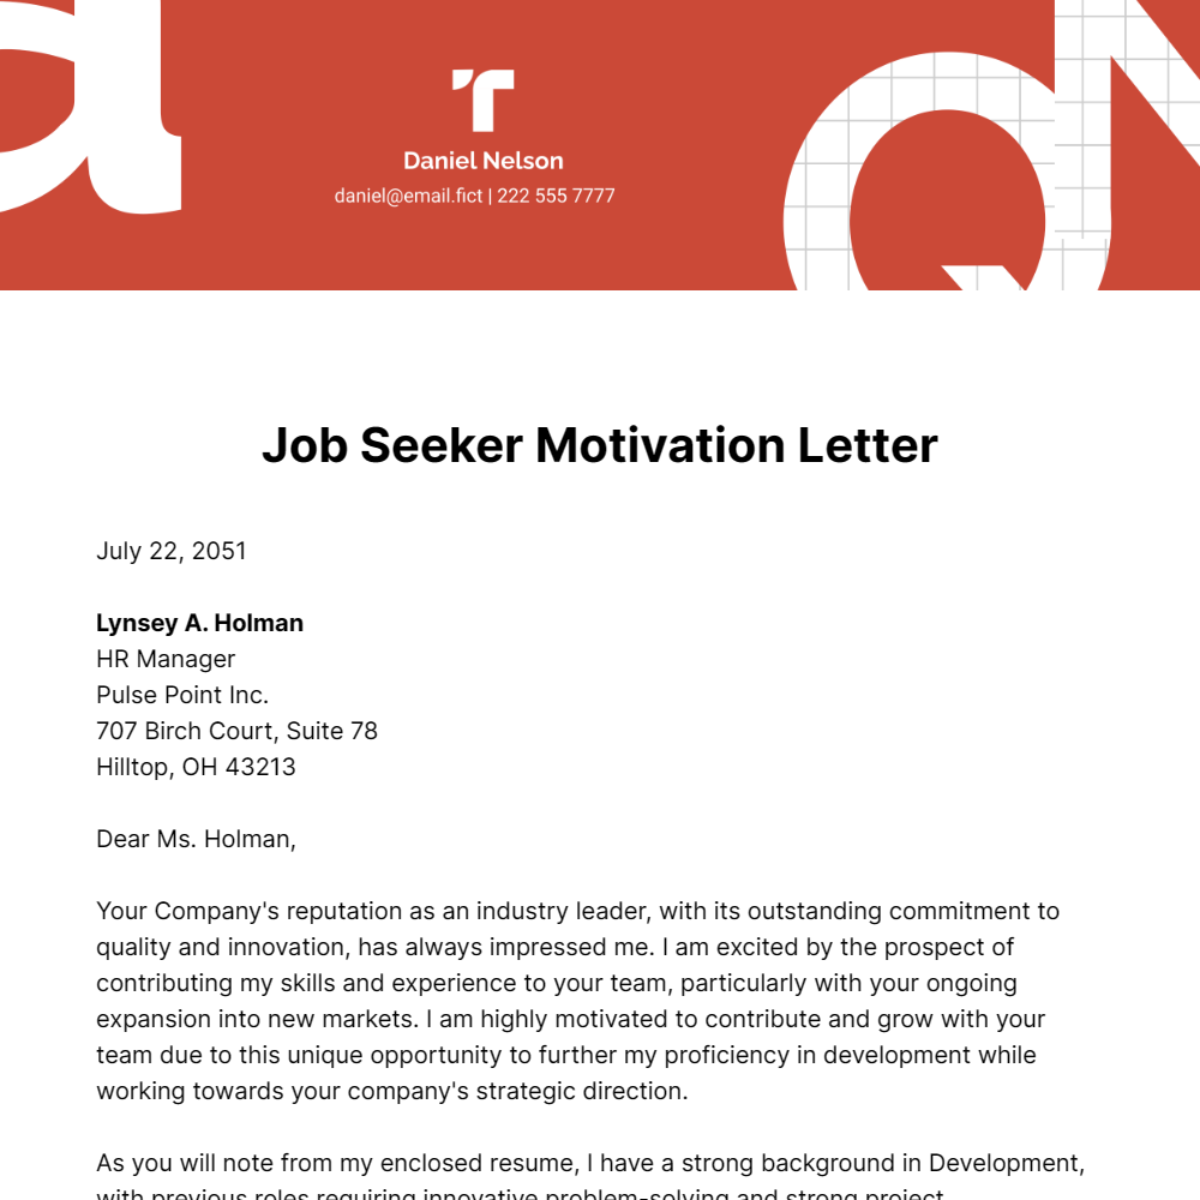 Job Seeker Motivation Letter Template